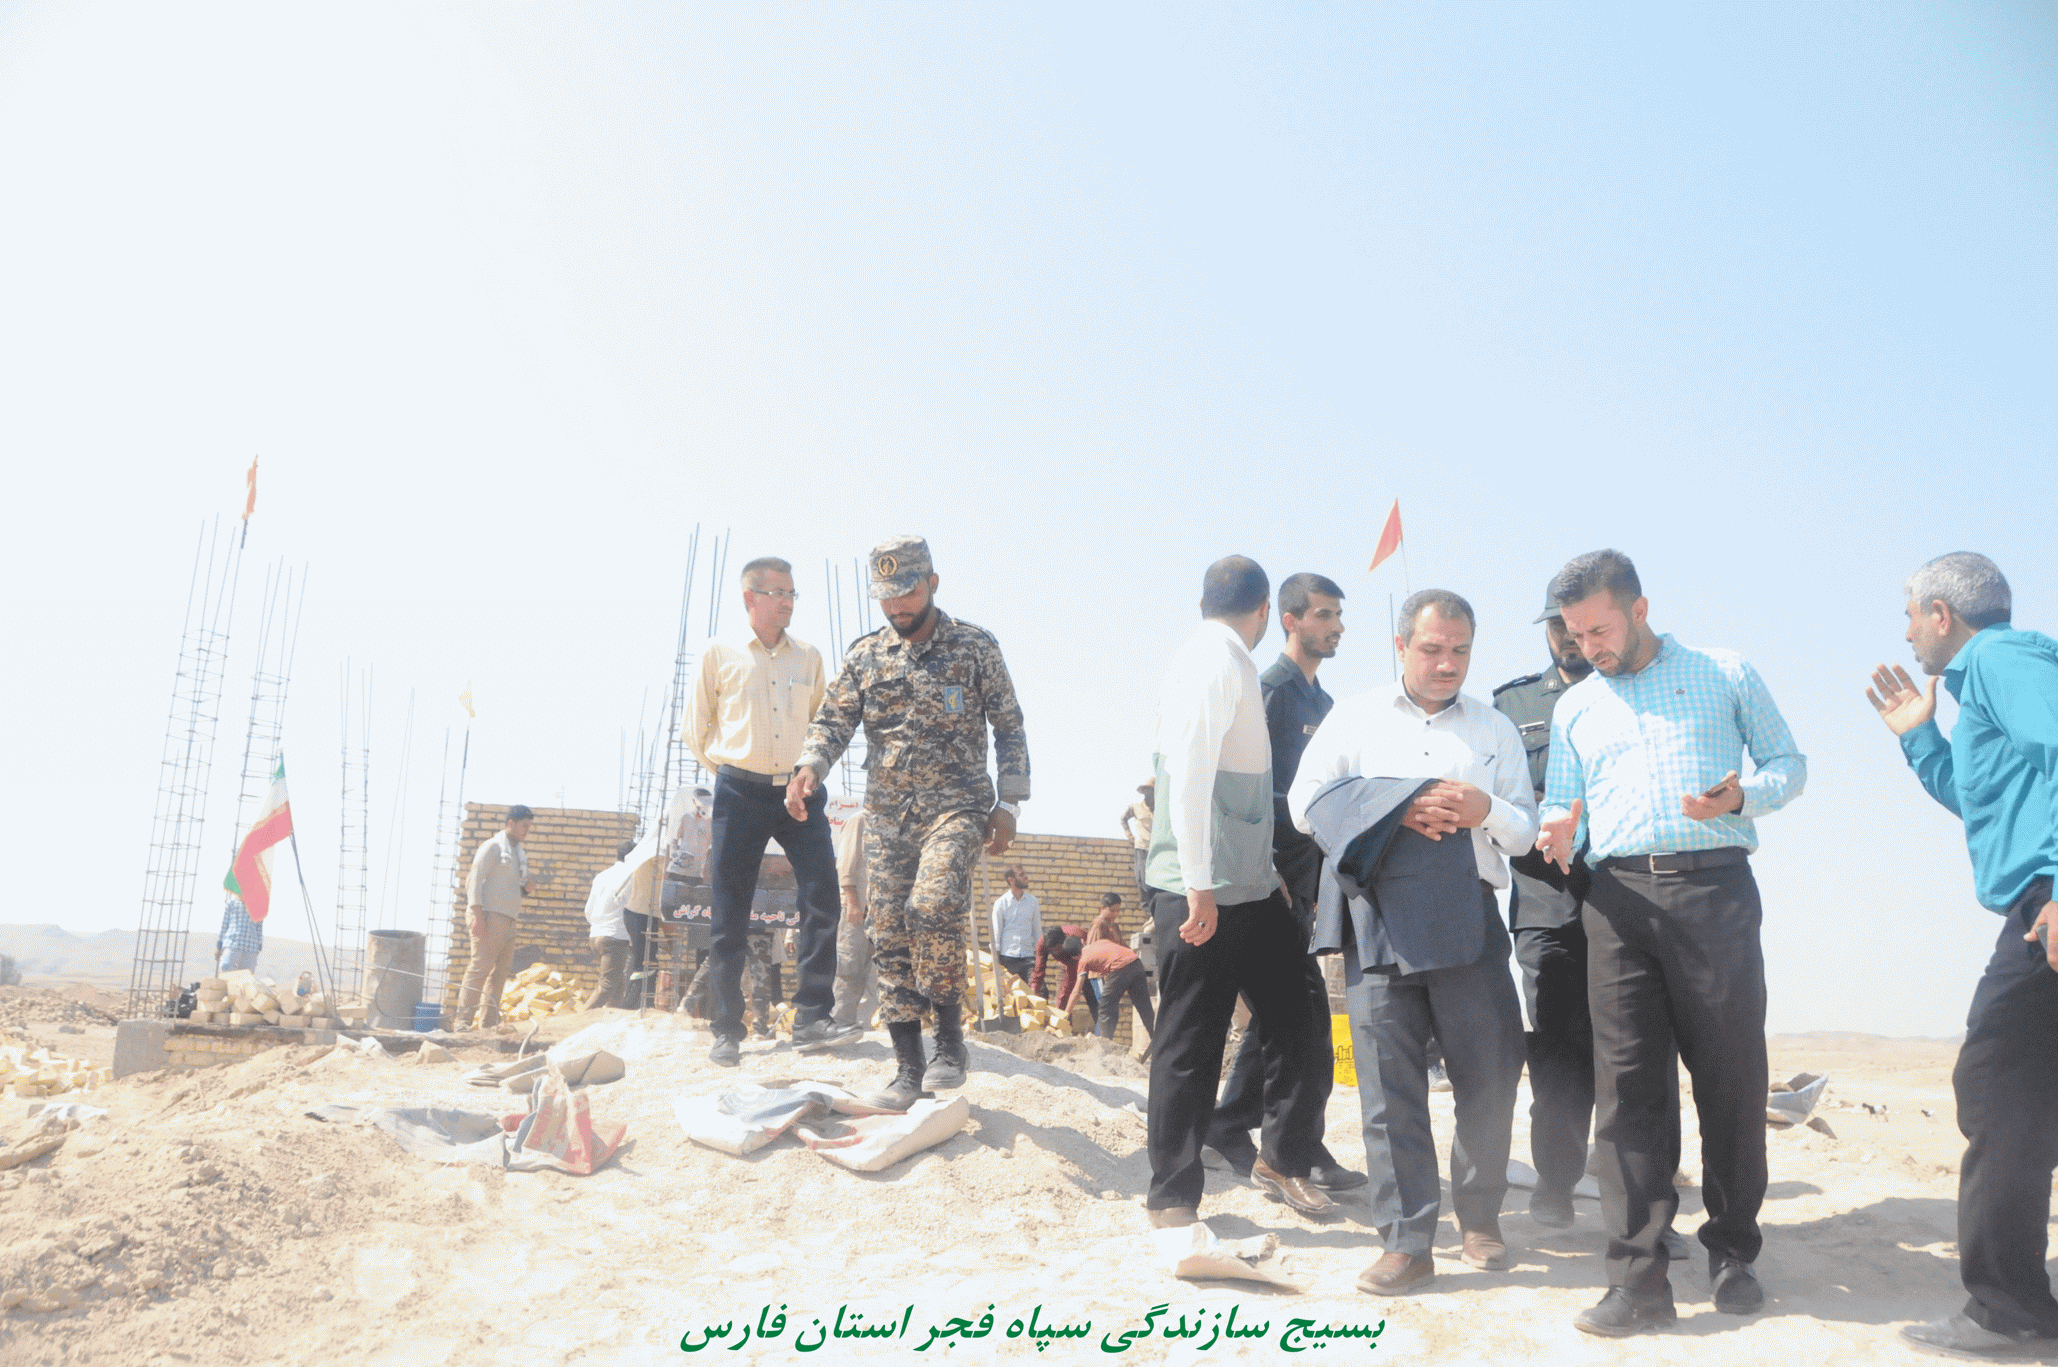 حضور تیم بسیج سازندگی سپاه فجر در اردوی جهادی شهرستان گراش